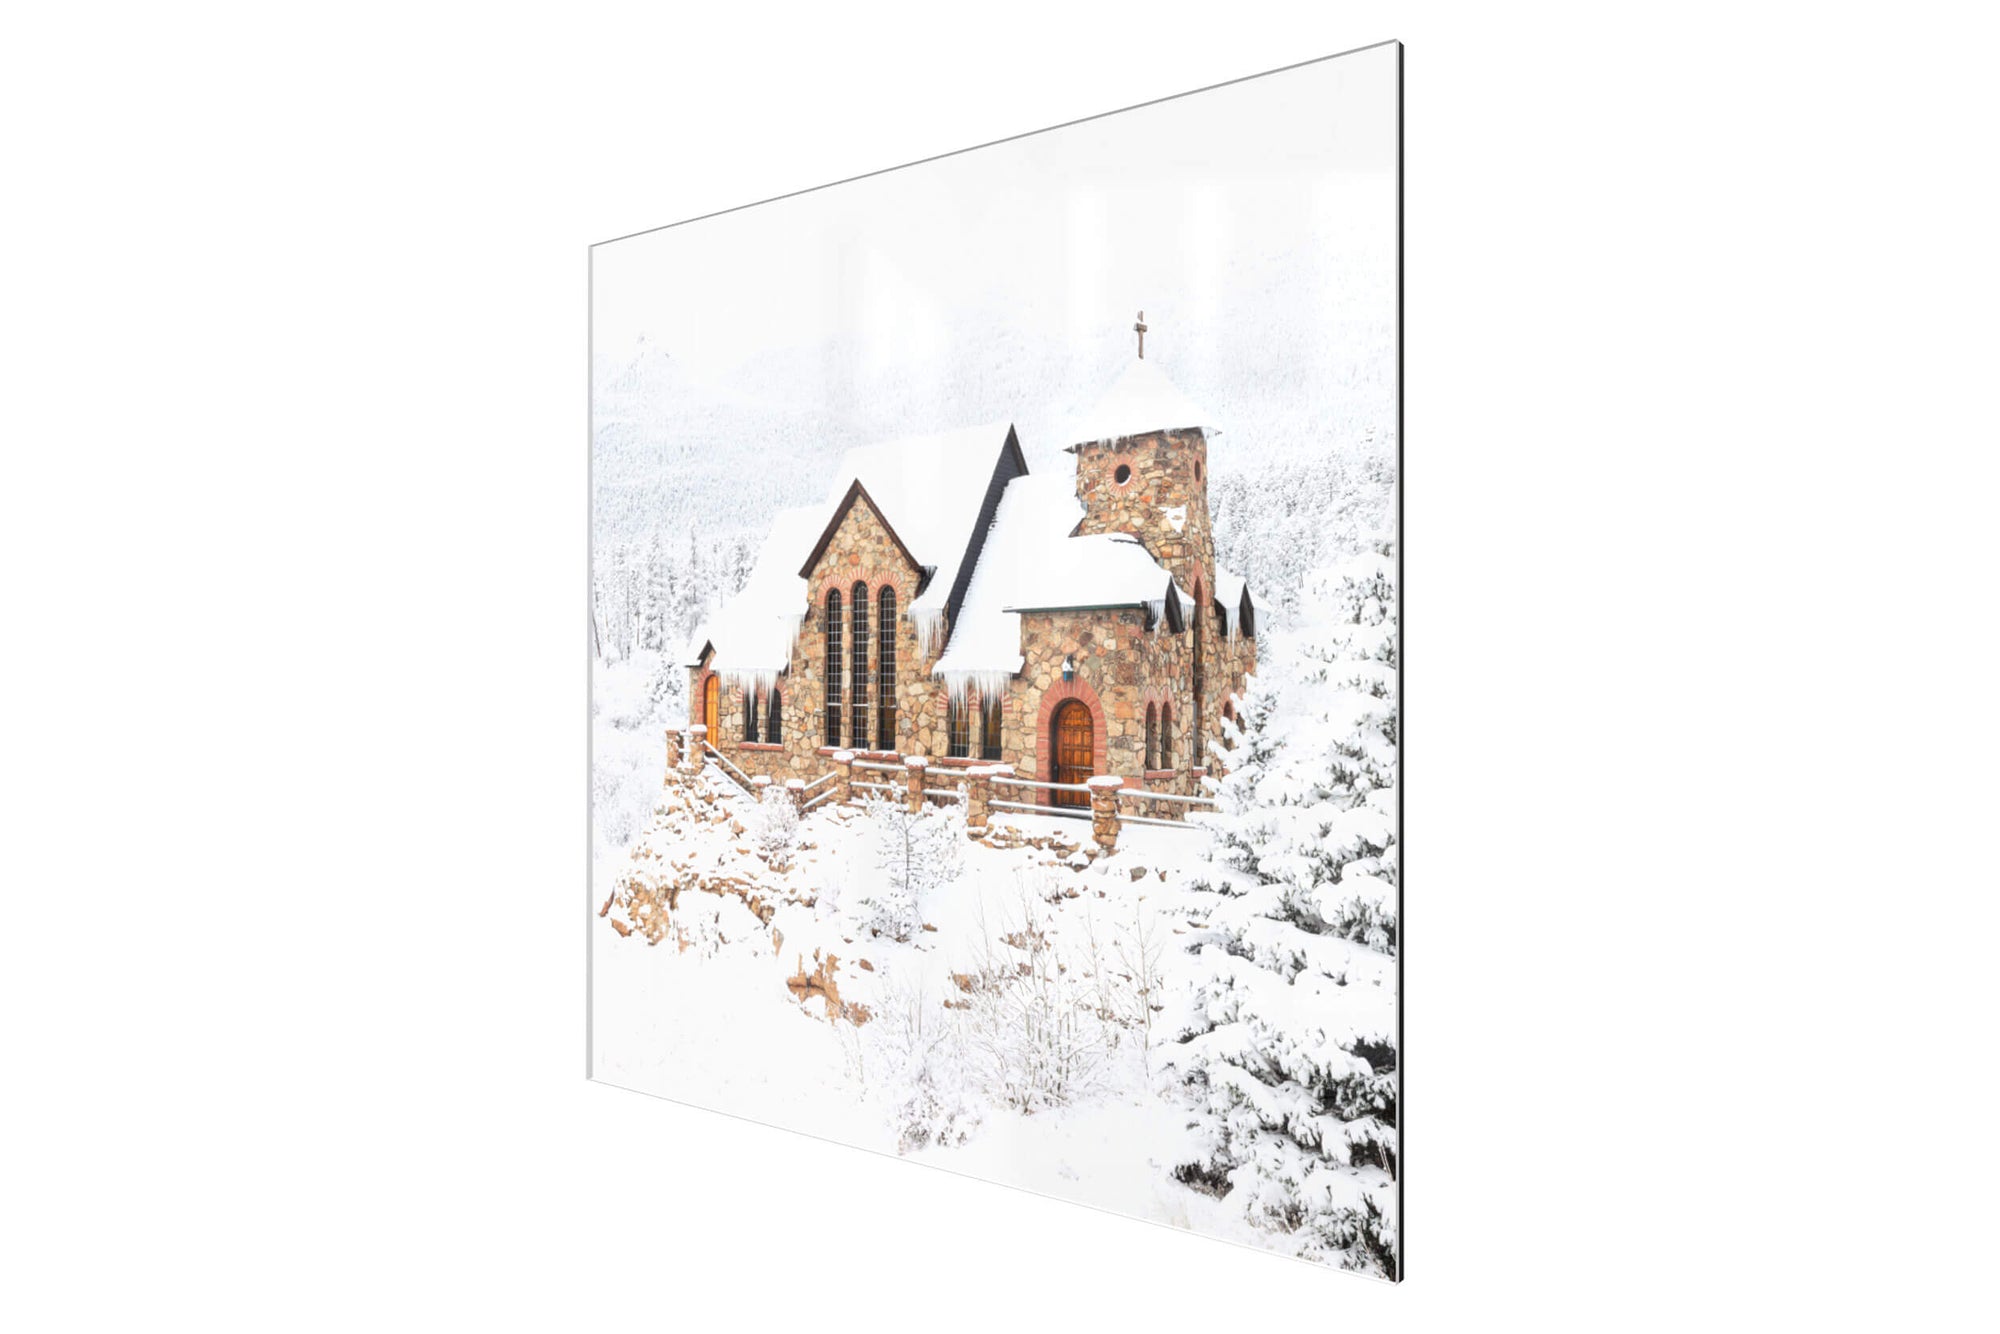 A piece of TruLife acrylic Colorado art shows St. Malo's Chapel near Estes Park.